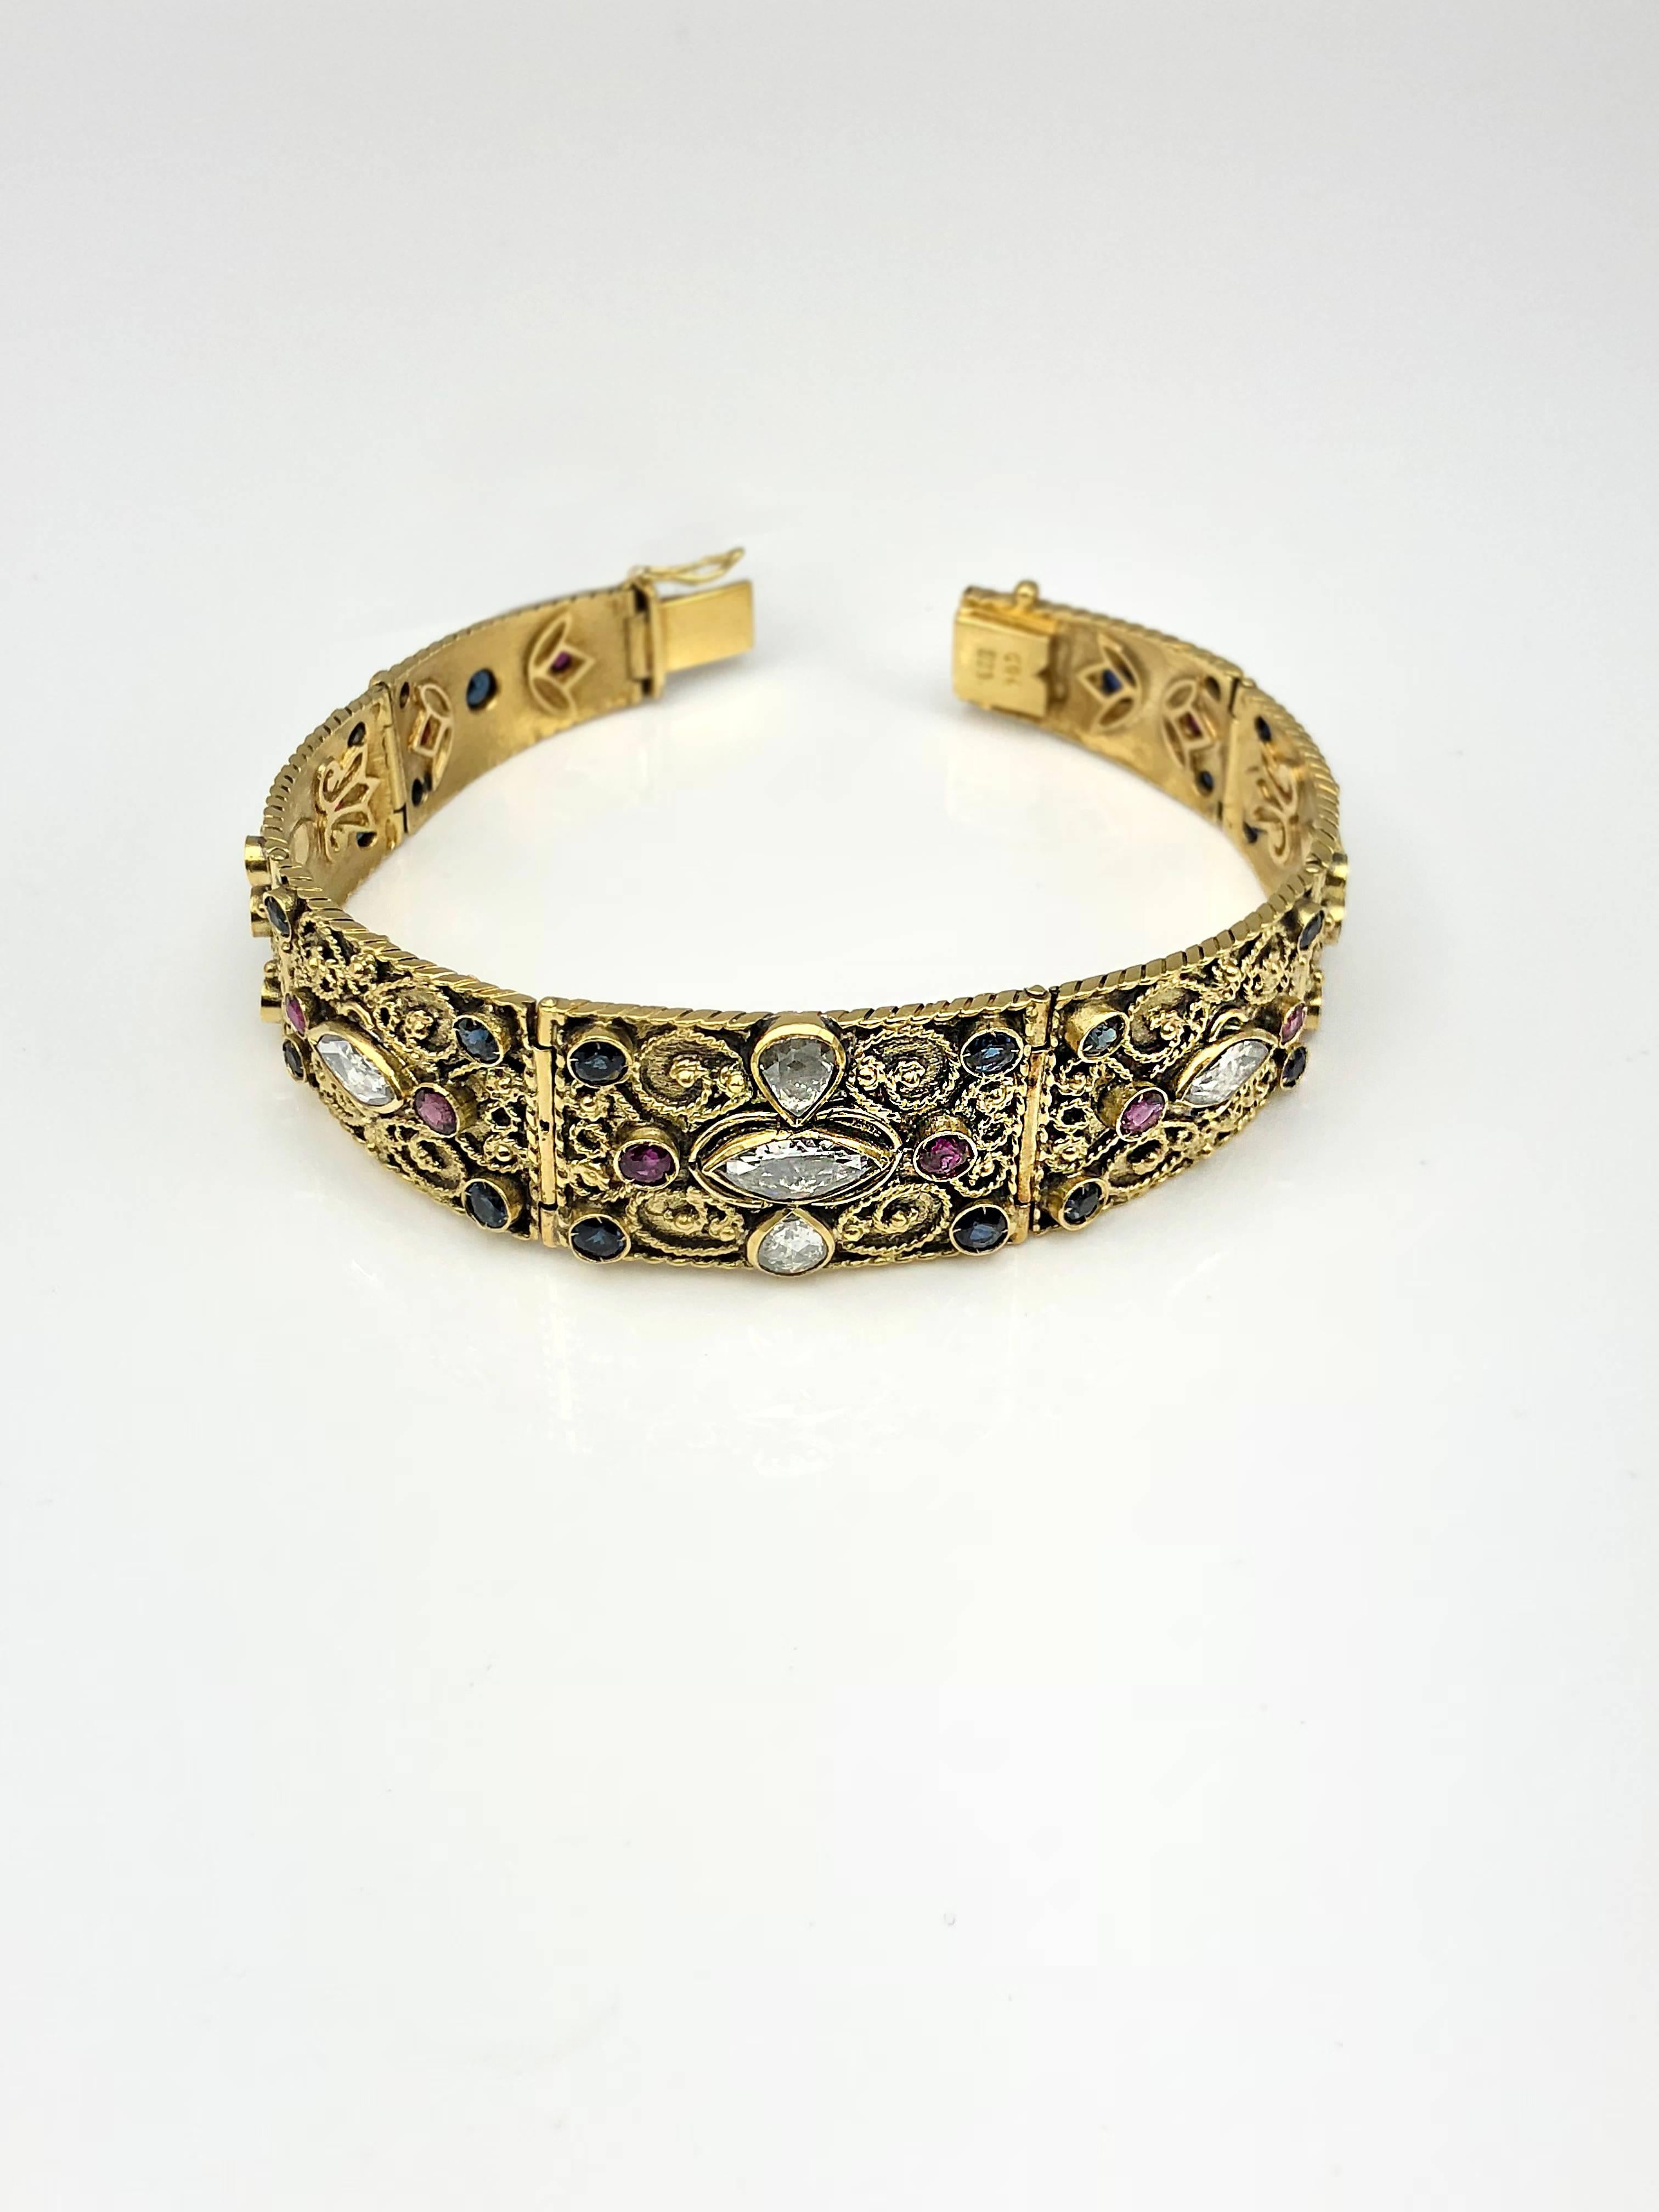 Das S.Georgios Designer-Armband aus 18 Karat Gelbgold mit Diamanten, verziert im byzantinischen Stil mit Granulation, ist eine Sonderanfertigung. Das einzigartige Armband passt sich dank seines Designs gut an das Handgelenk an. Dieses Schmuckstück